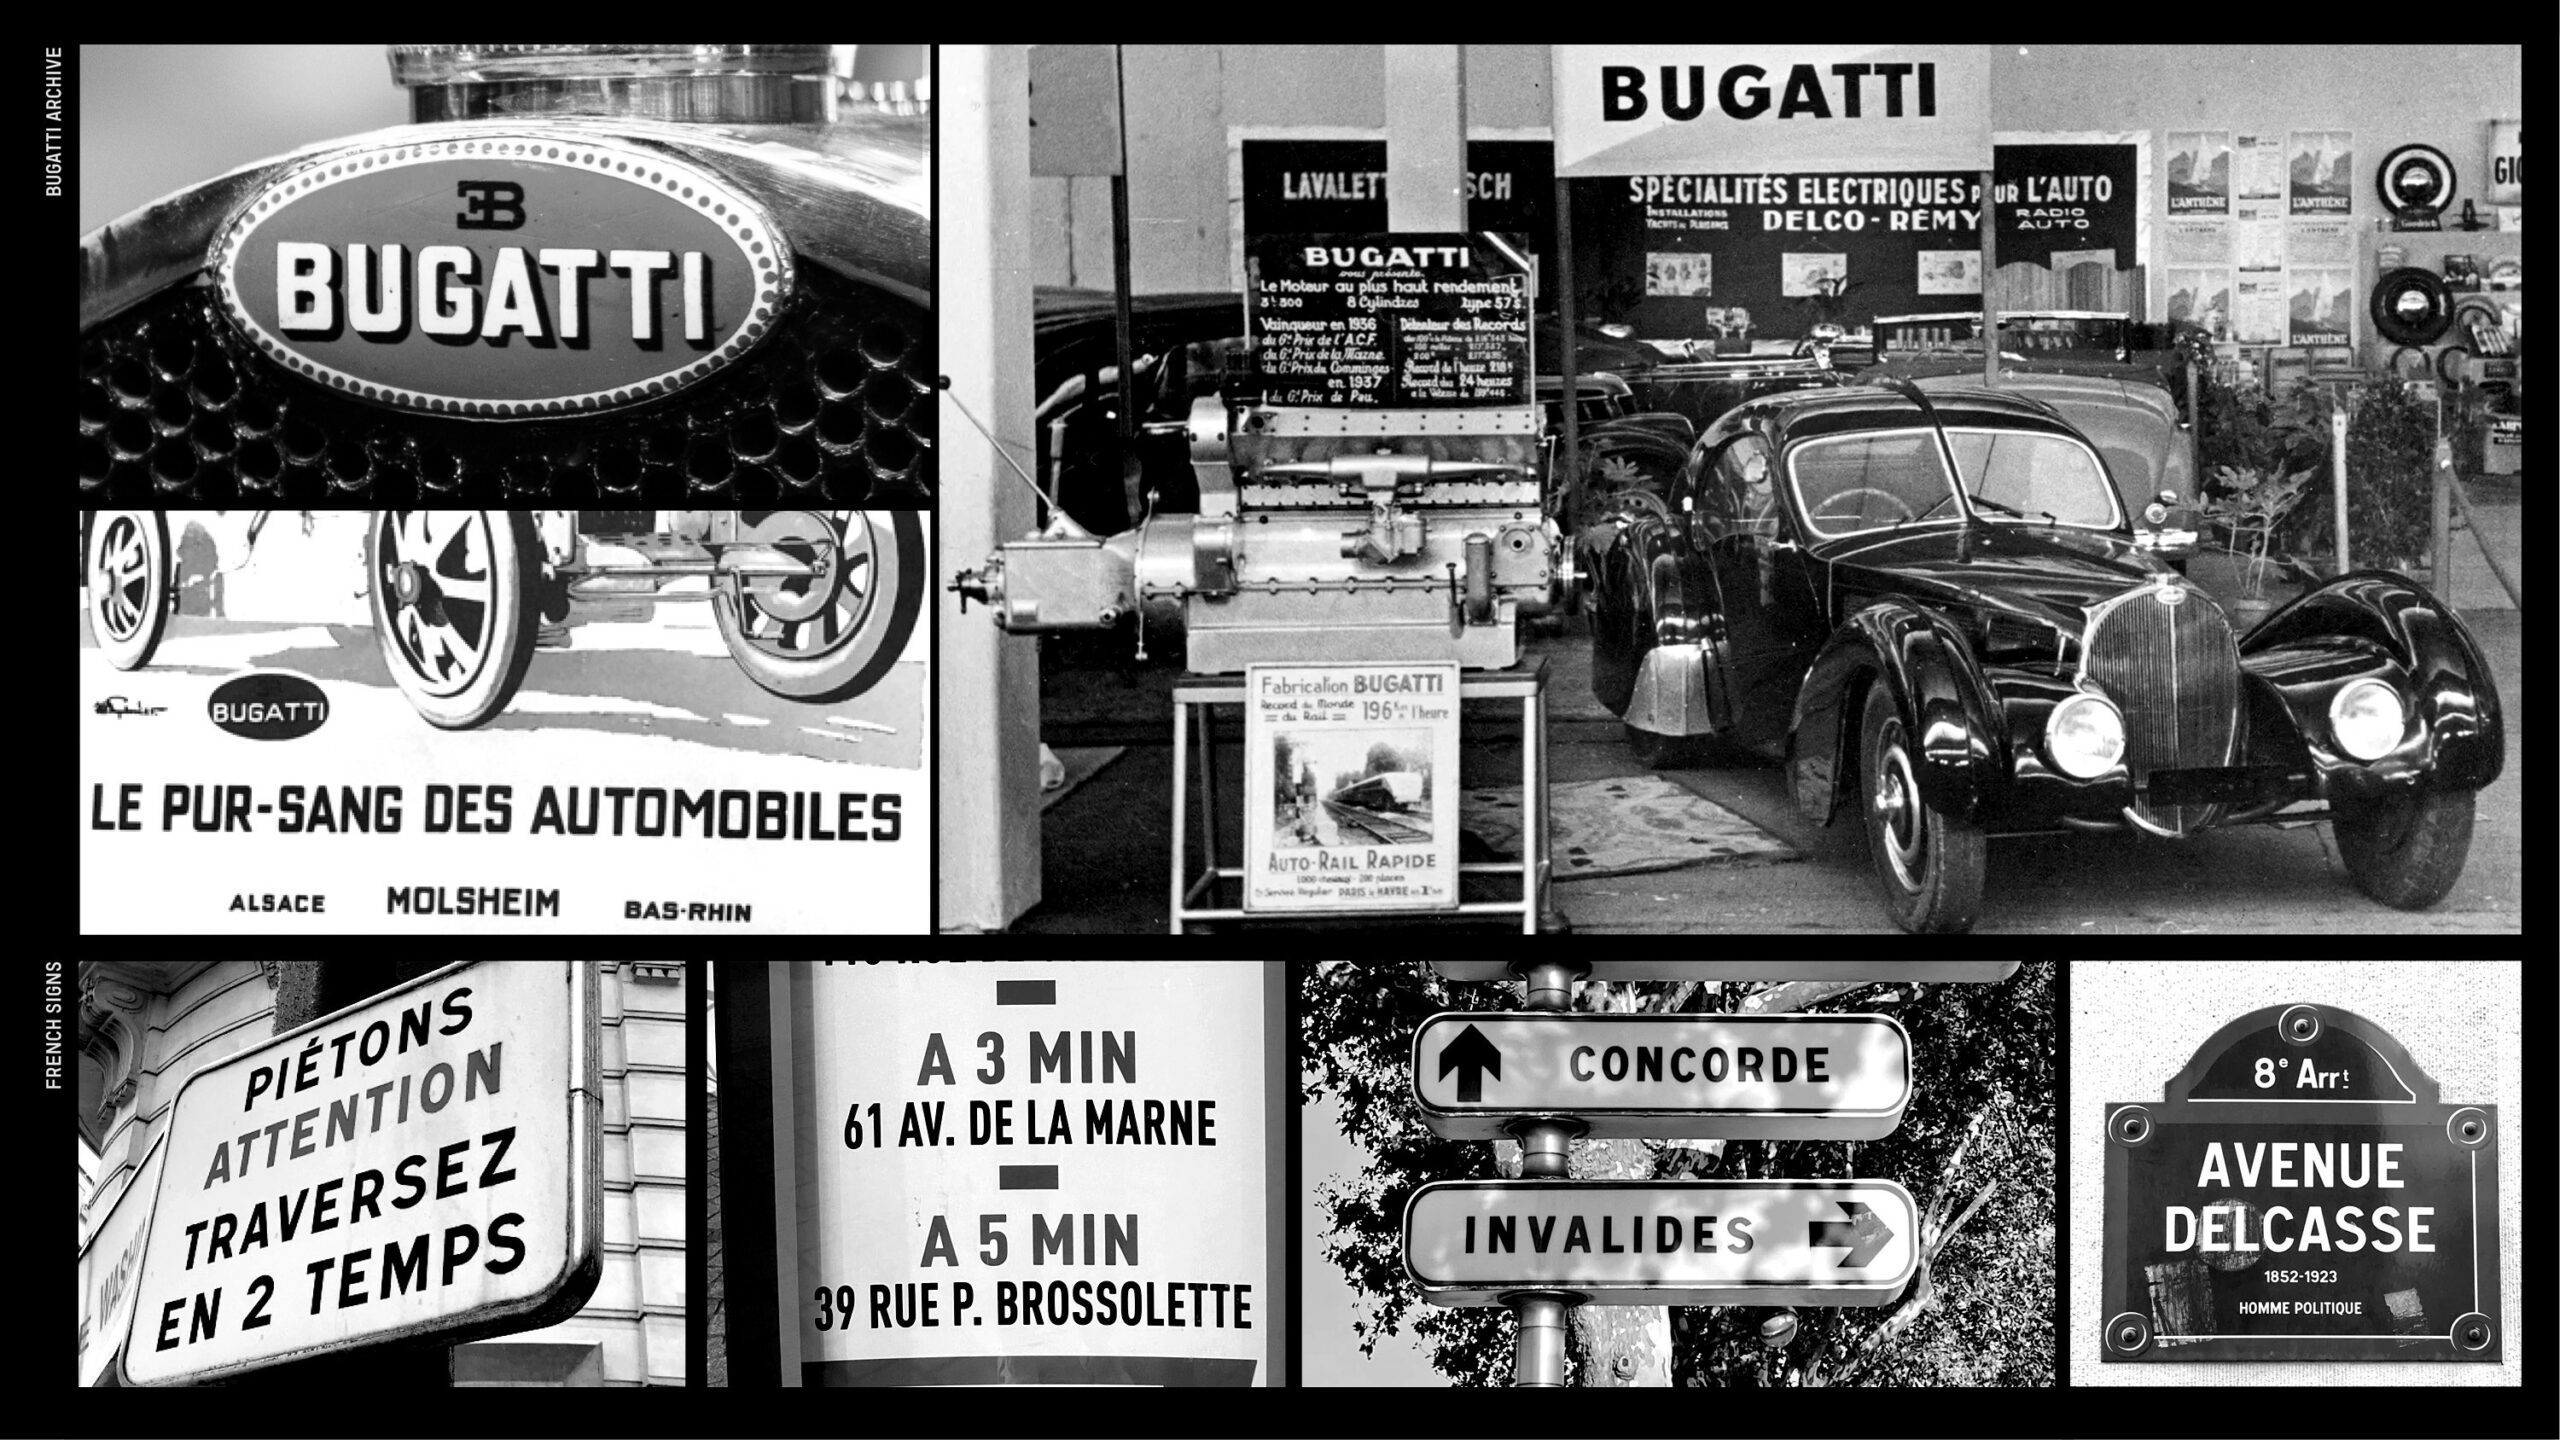 A snapshot of Bugatti's history